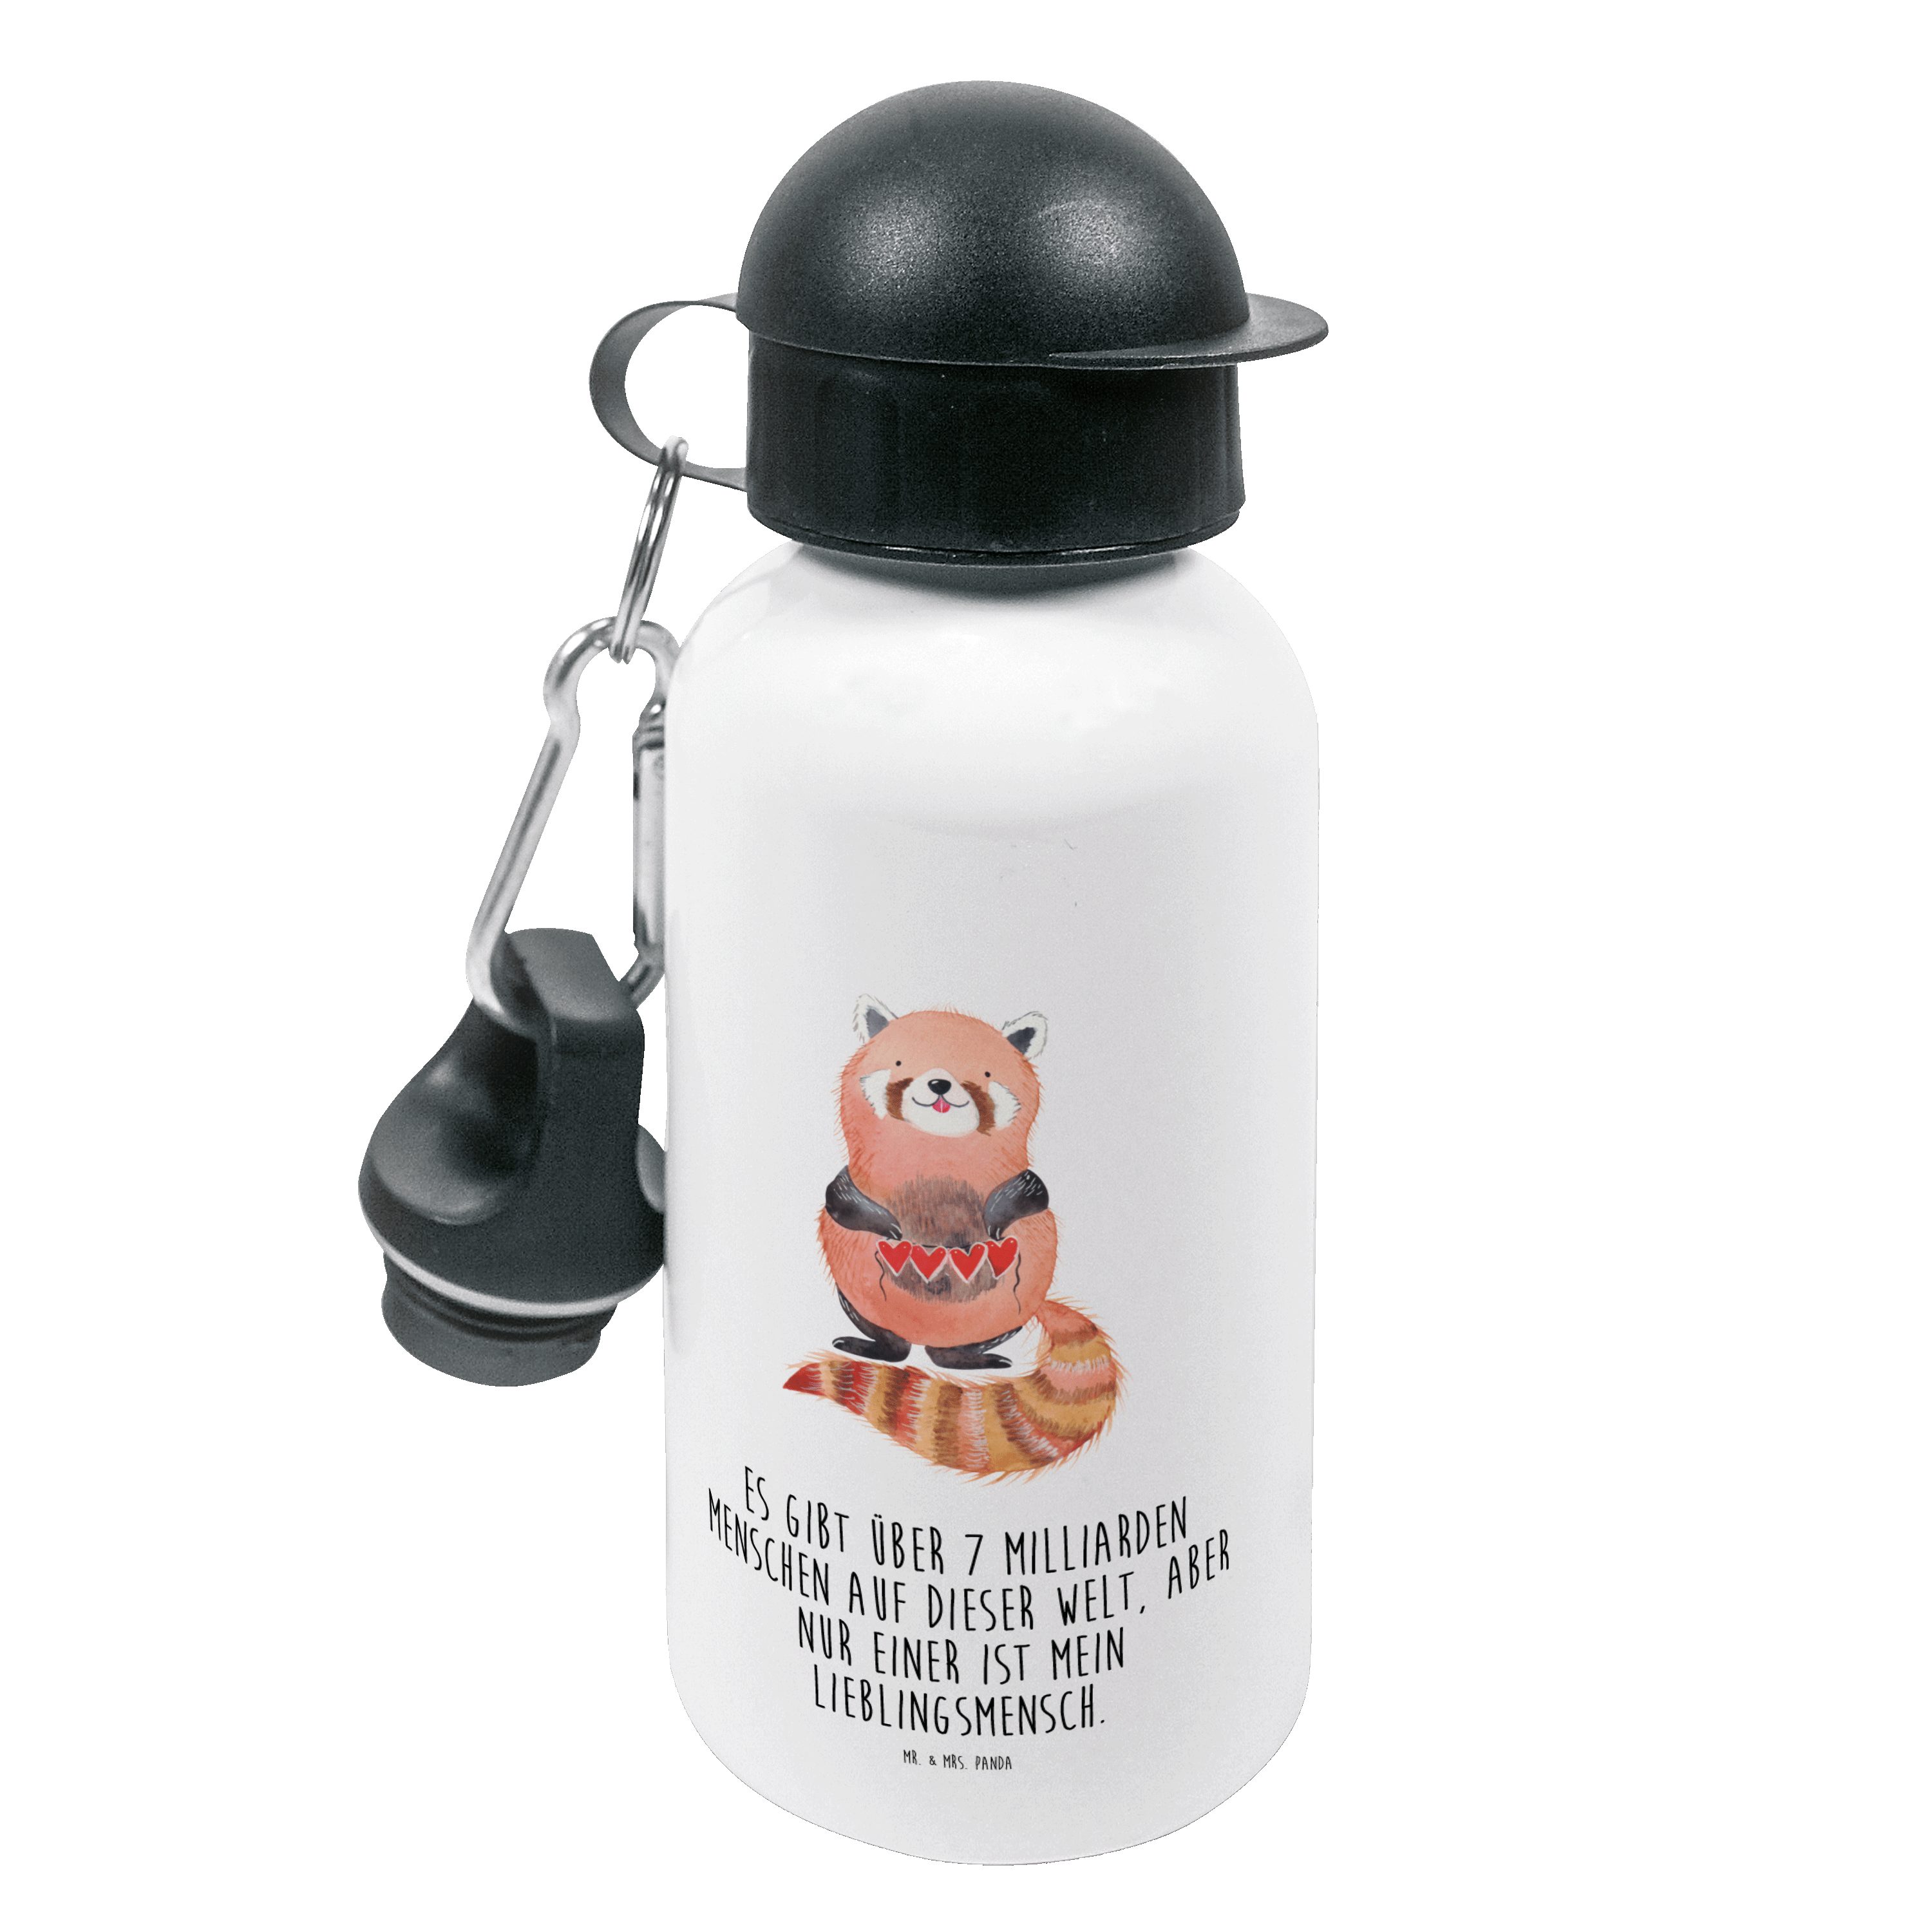 Mr. & Mrs. Panda Kinder lustige Roter Geschenk, Panda Weiß Trinkflasche Sprüche - Trinkflasche, 